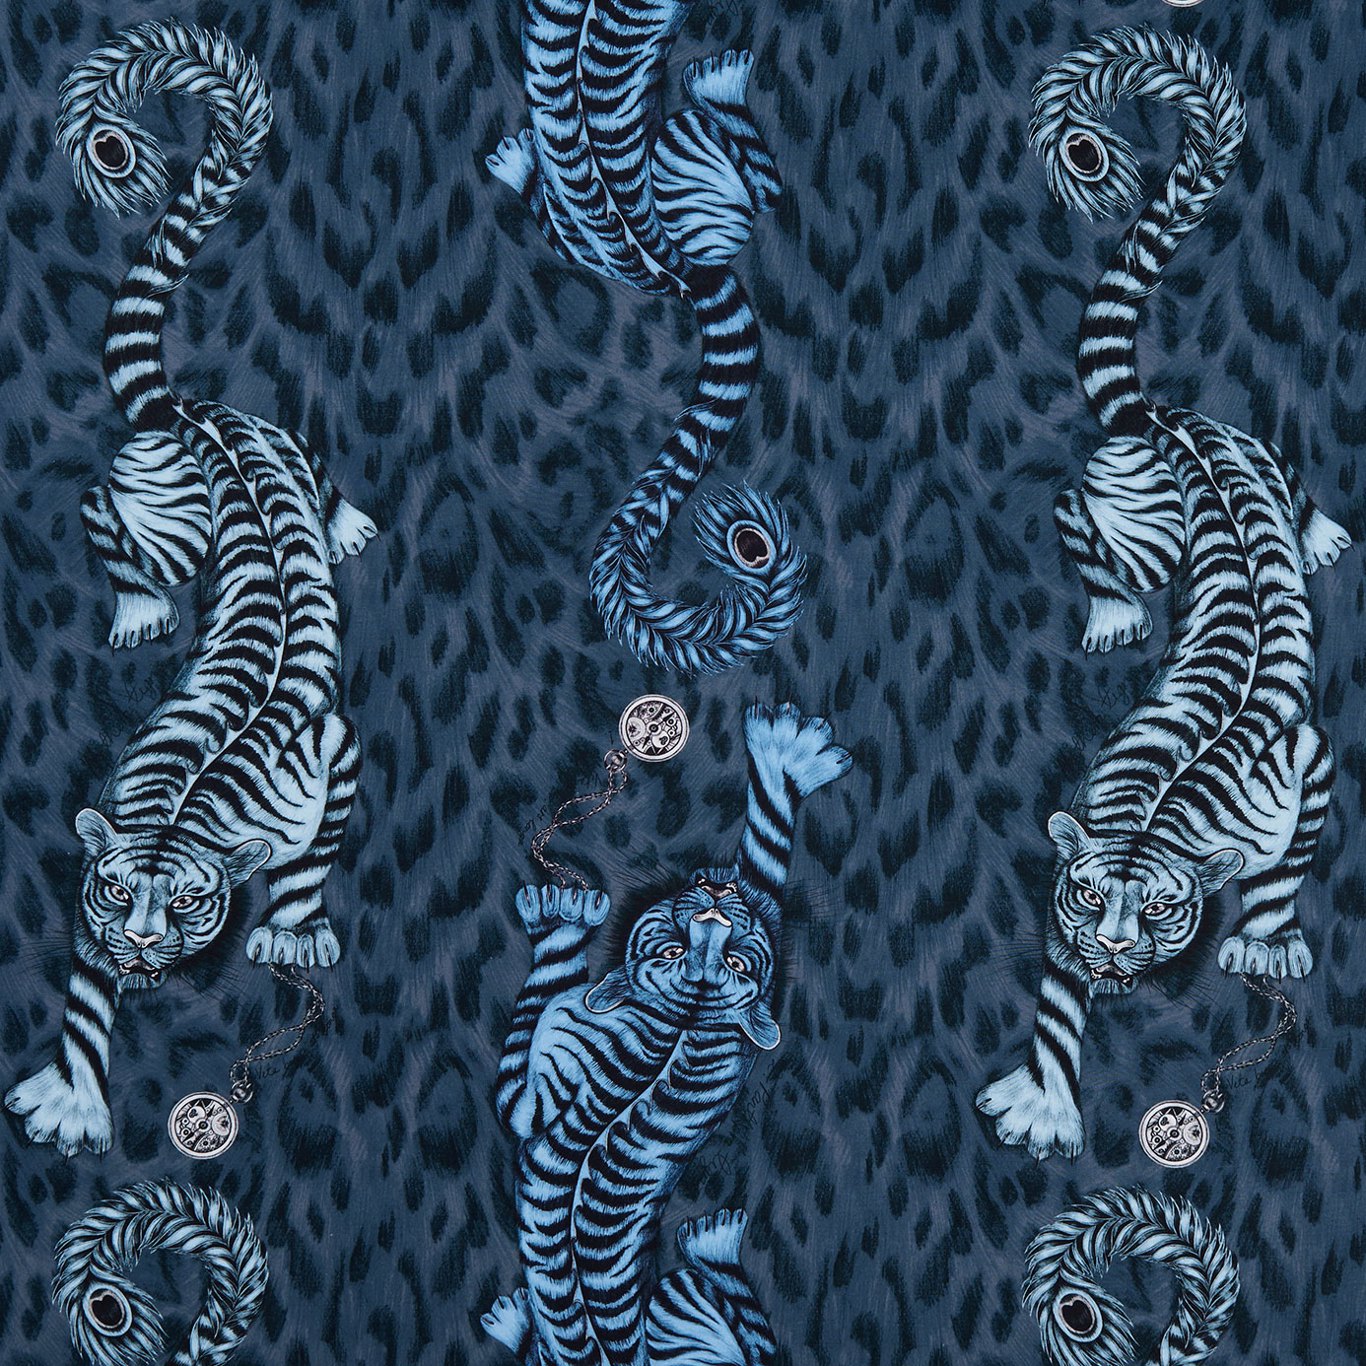 Tigris Fabric by Emma Shipley